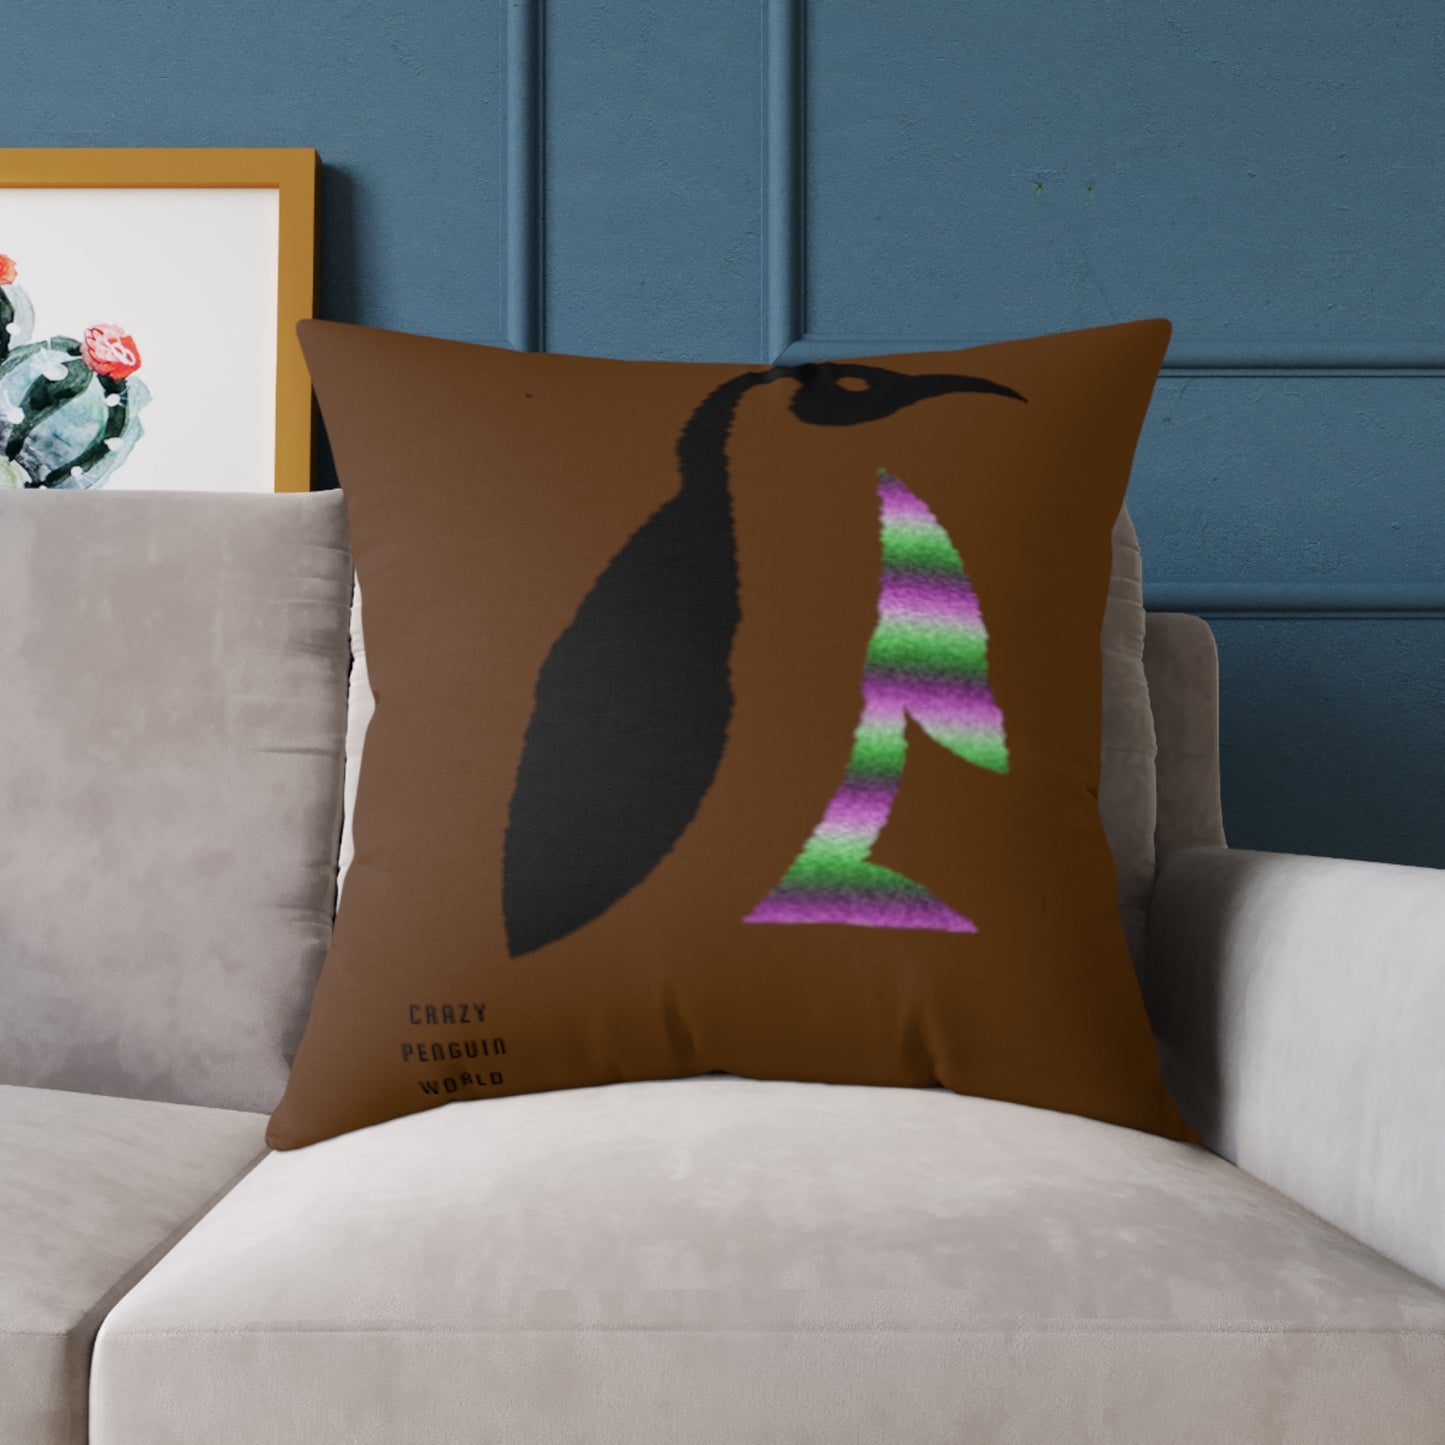 Spun Polyester Pillow: Crazy Penguin World Logo Brown